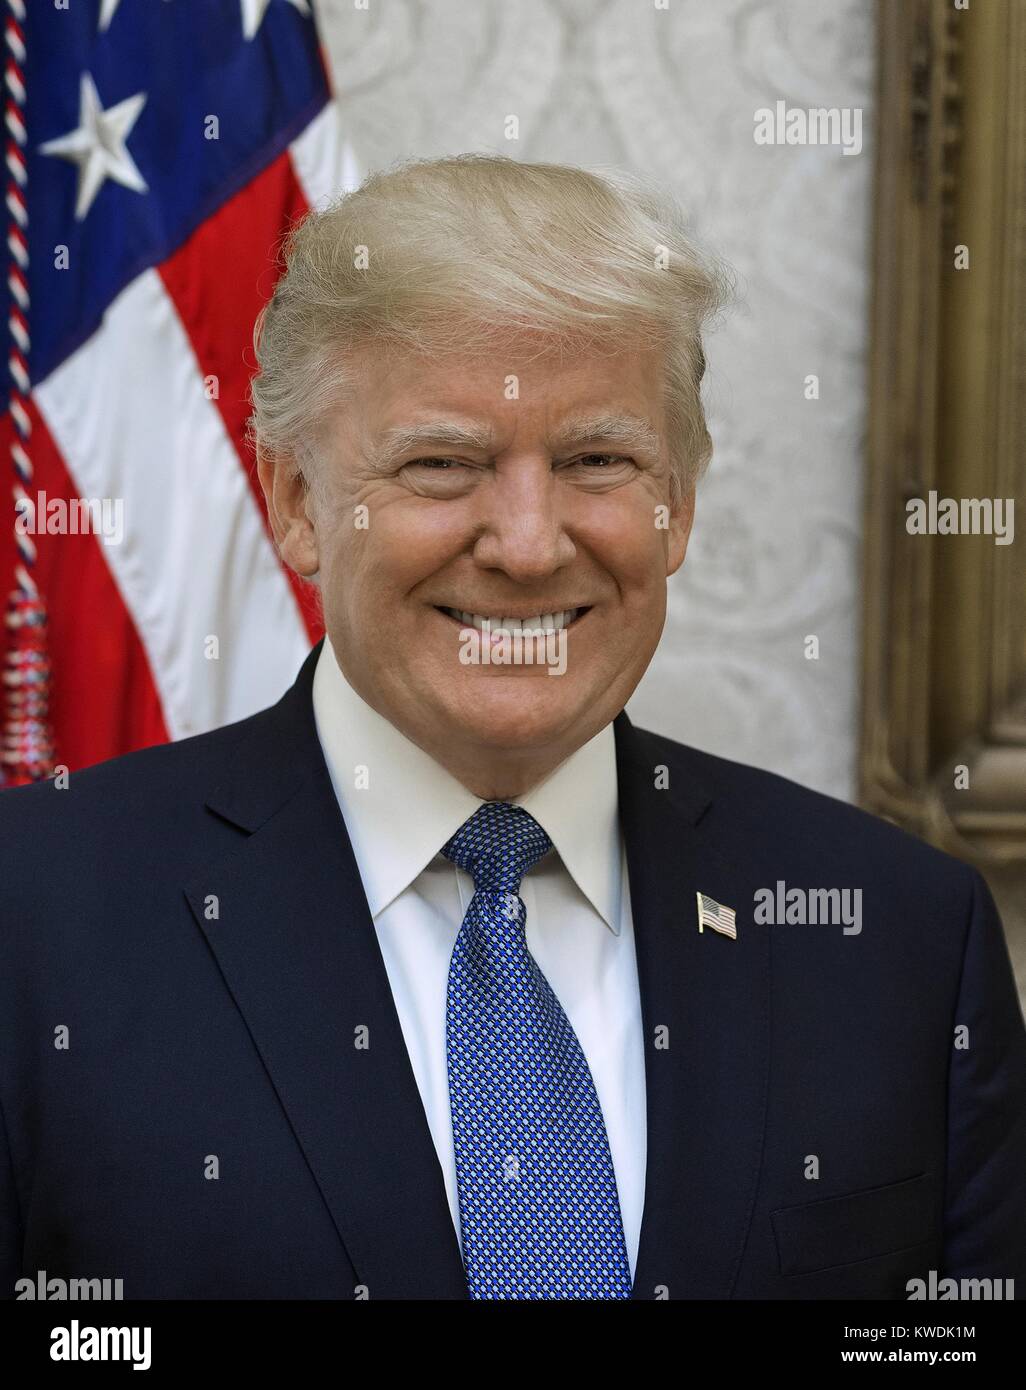 Photo officielle du Président Donald Trump publié le 31 octobre 2017. Photographe de la Maison Blanche par Shealah Craighead, 6 octobre 2017 (BSLOC   2017 18 153) Banque D'Images